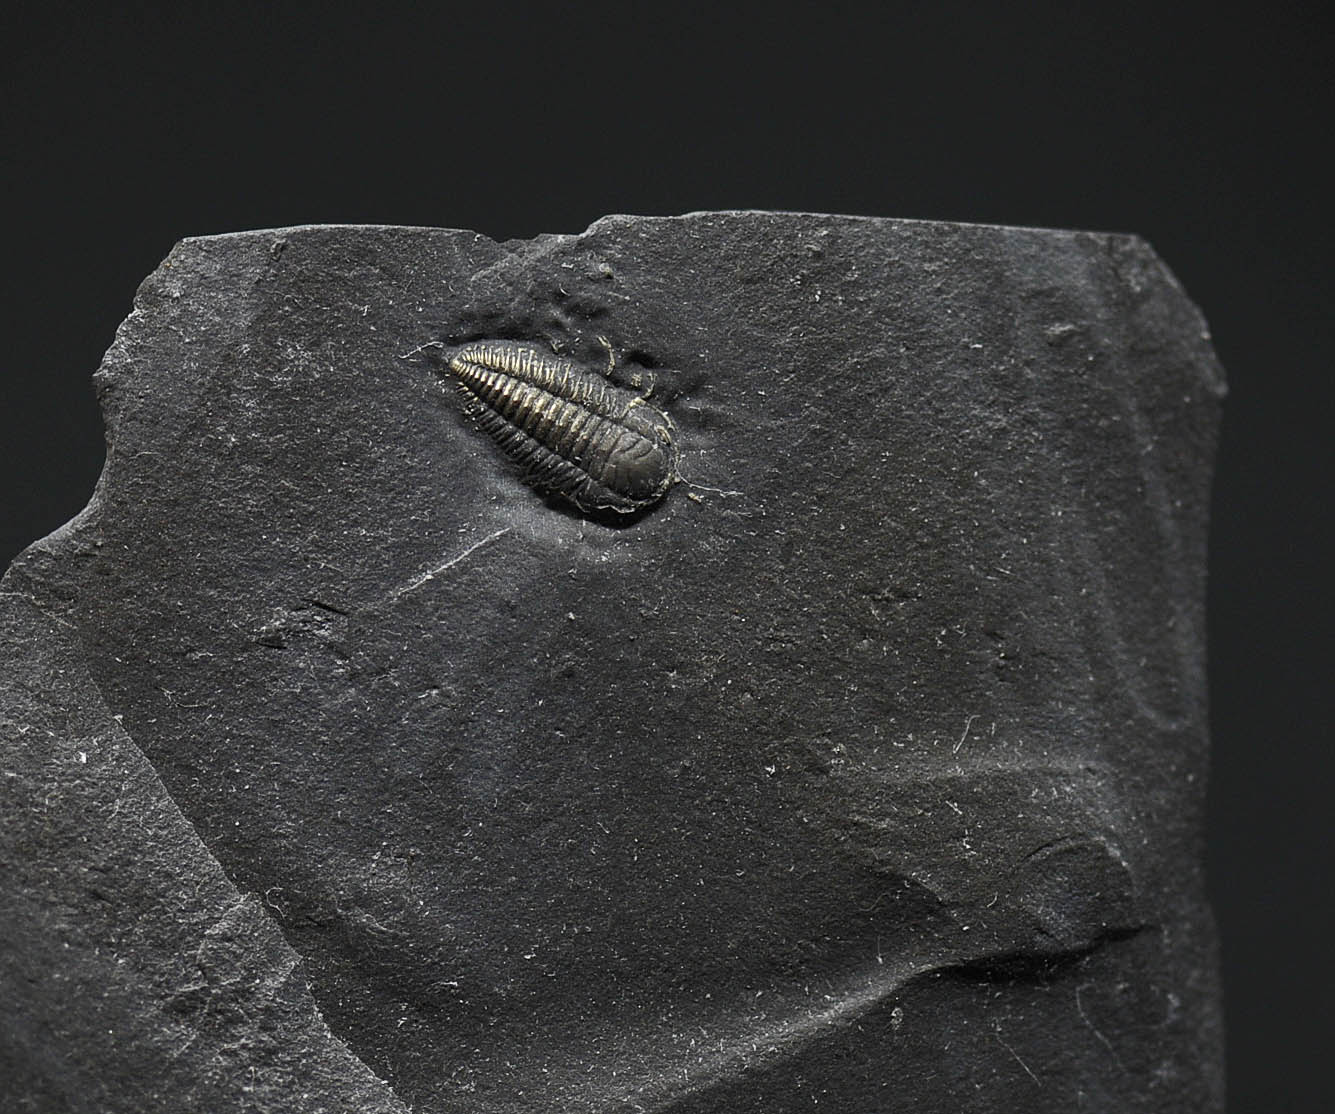 Pyritized Triarthrus eatoni trilobite